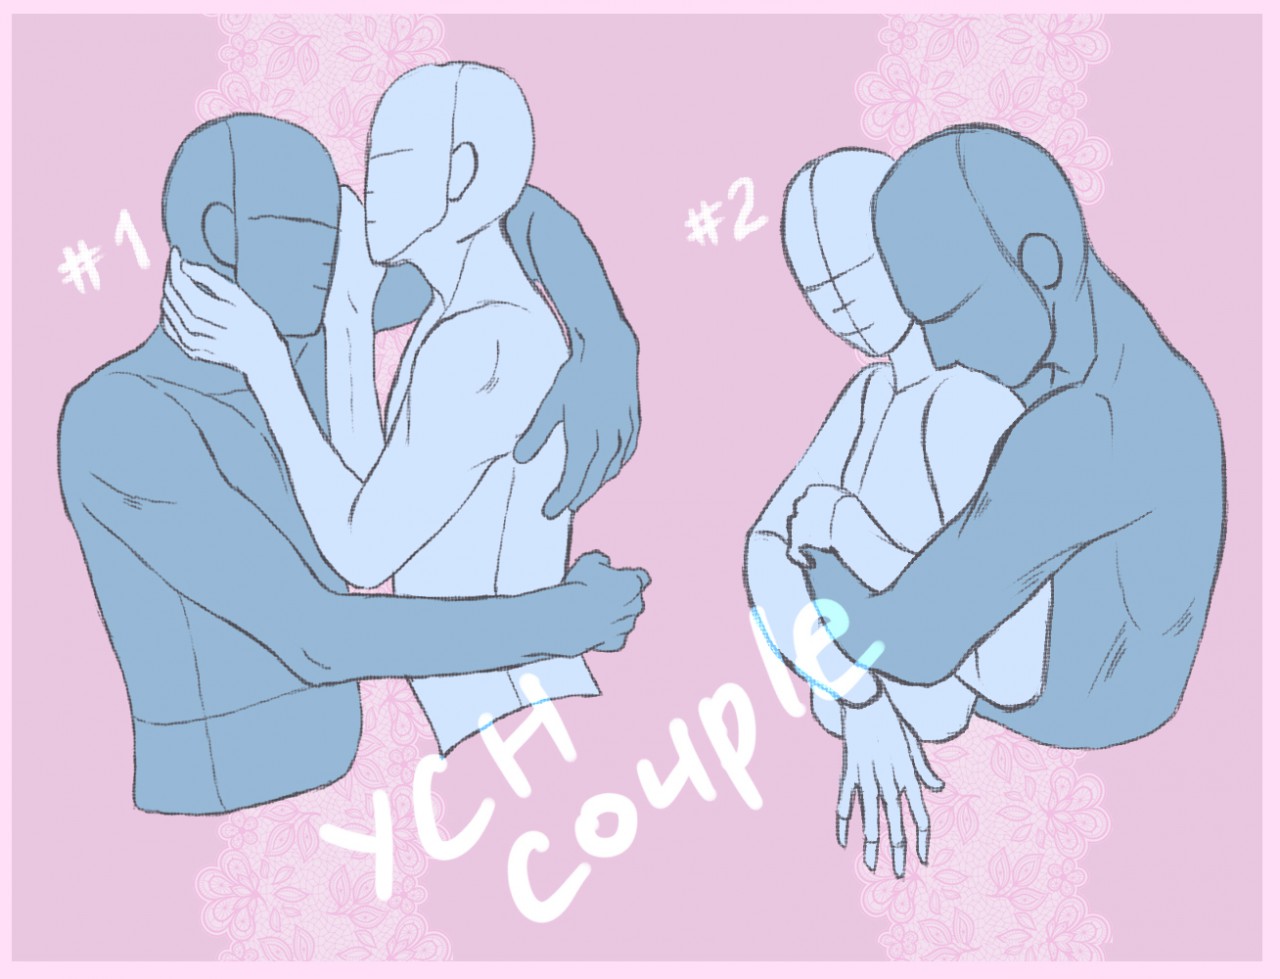 Ych romantic couple by AyumiOkigawa -- Fur Affinity [dot] net